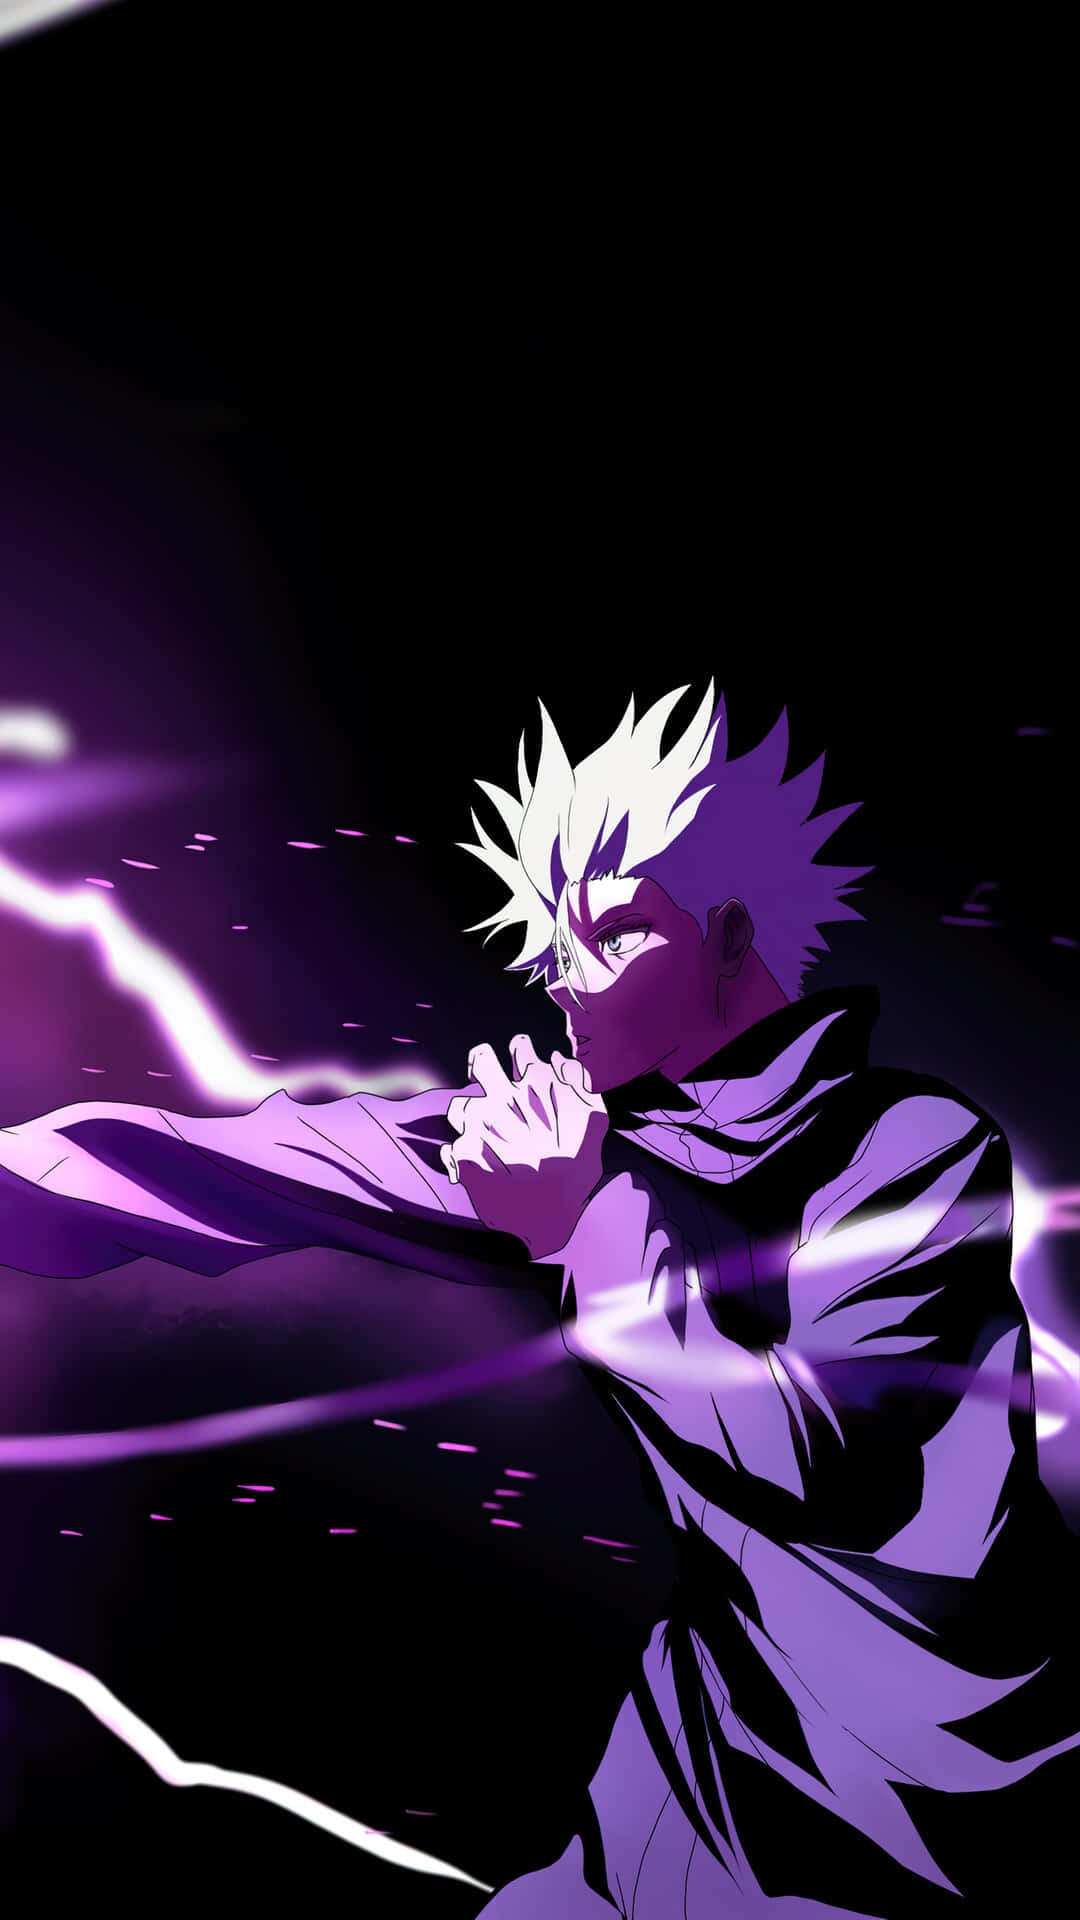 A mesmerizingly captivating purple anime background